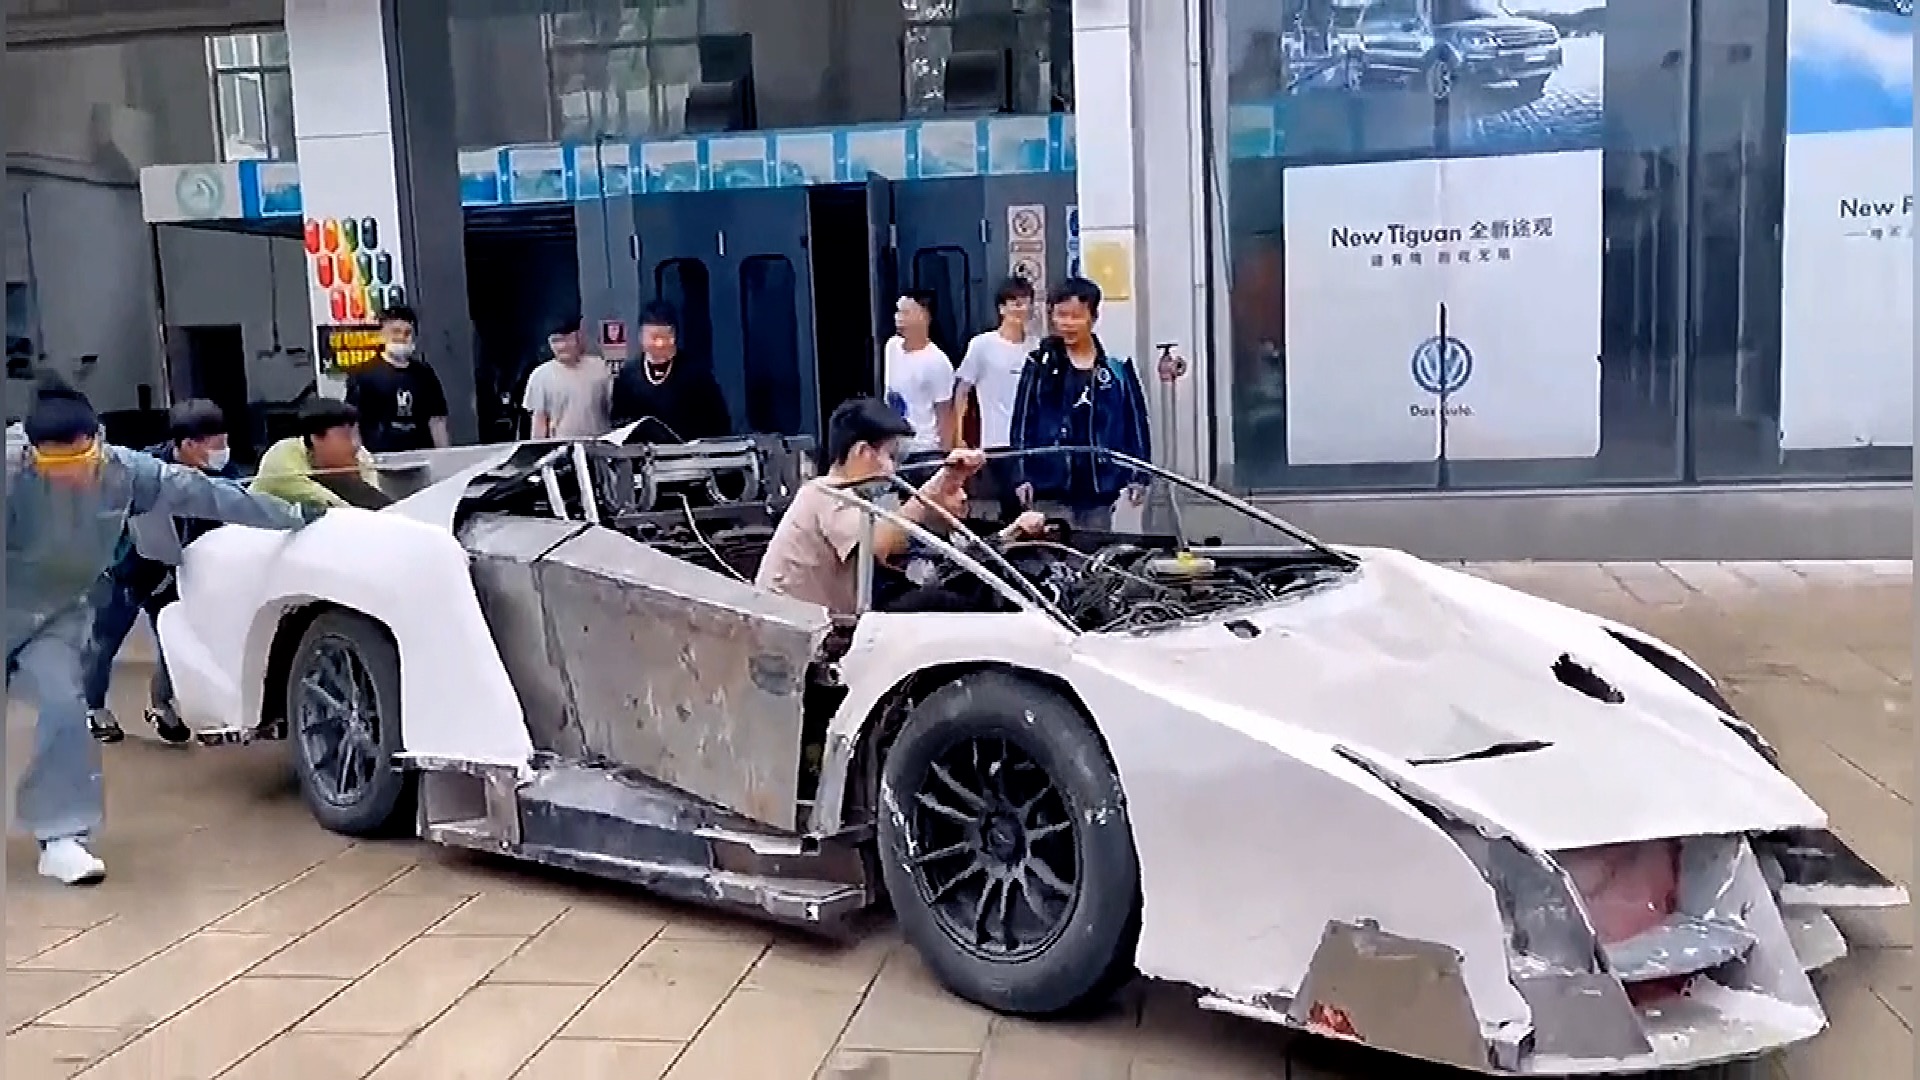 Students in SW China build replica Lamborghini for college project - CGTN